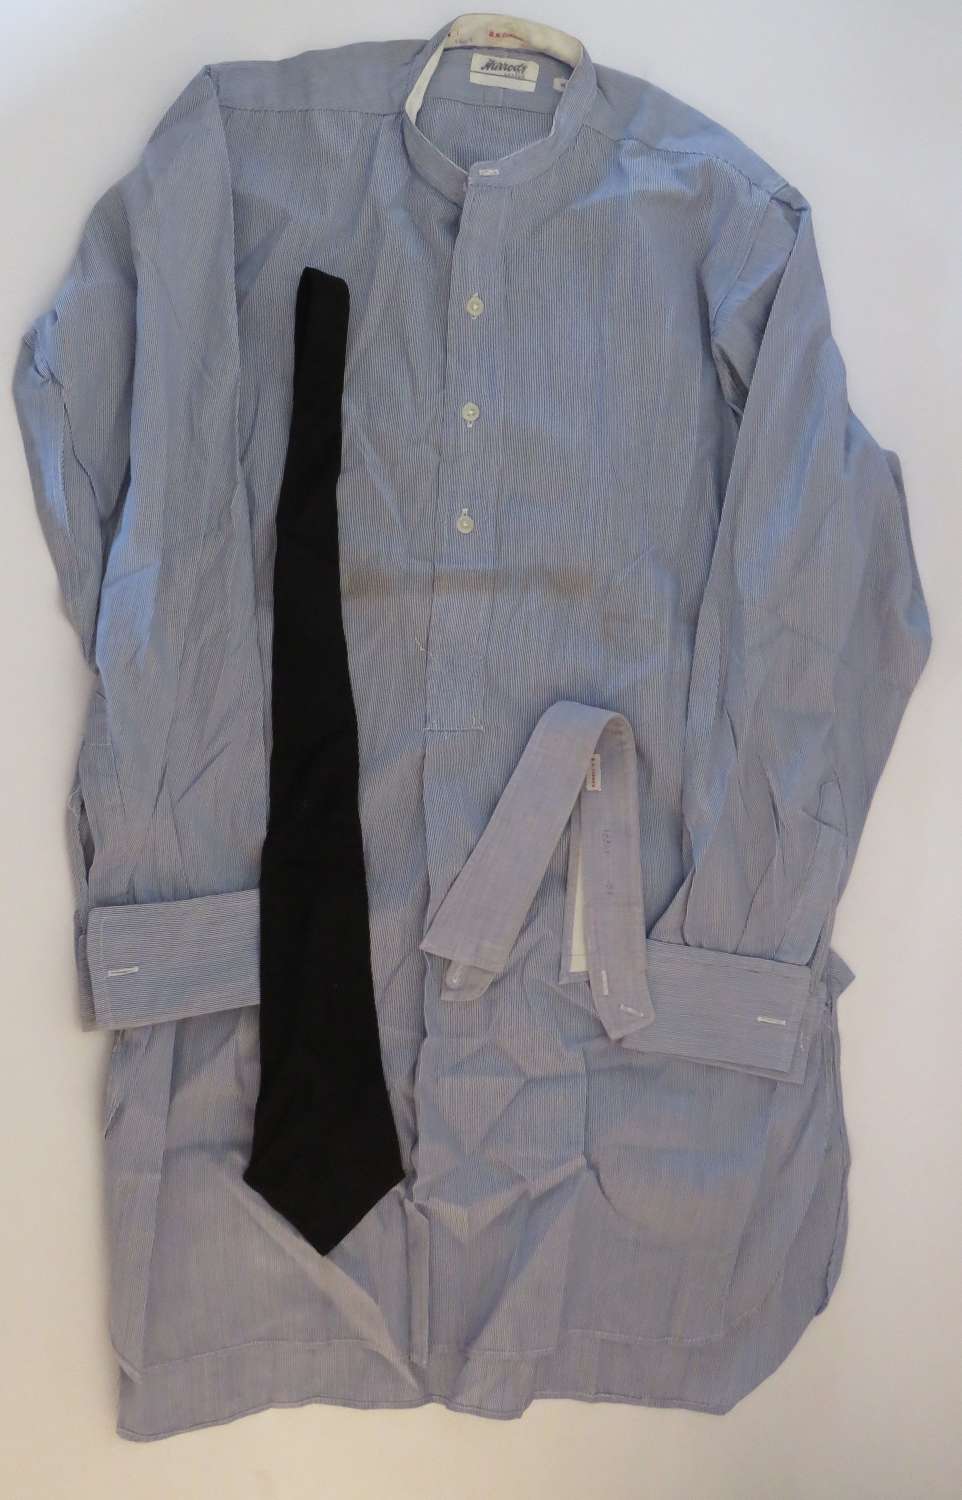 Interwar R.A.F / Civilian Blue Collarless Shirt and Tie